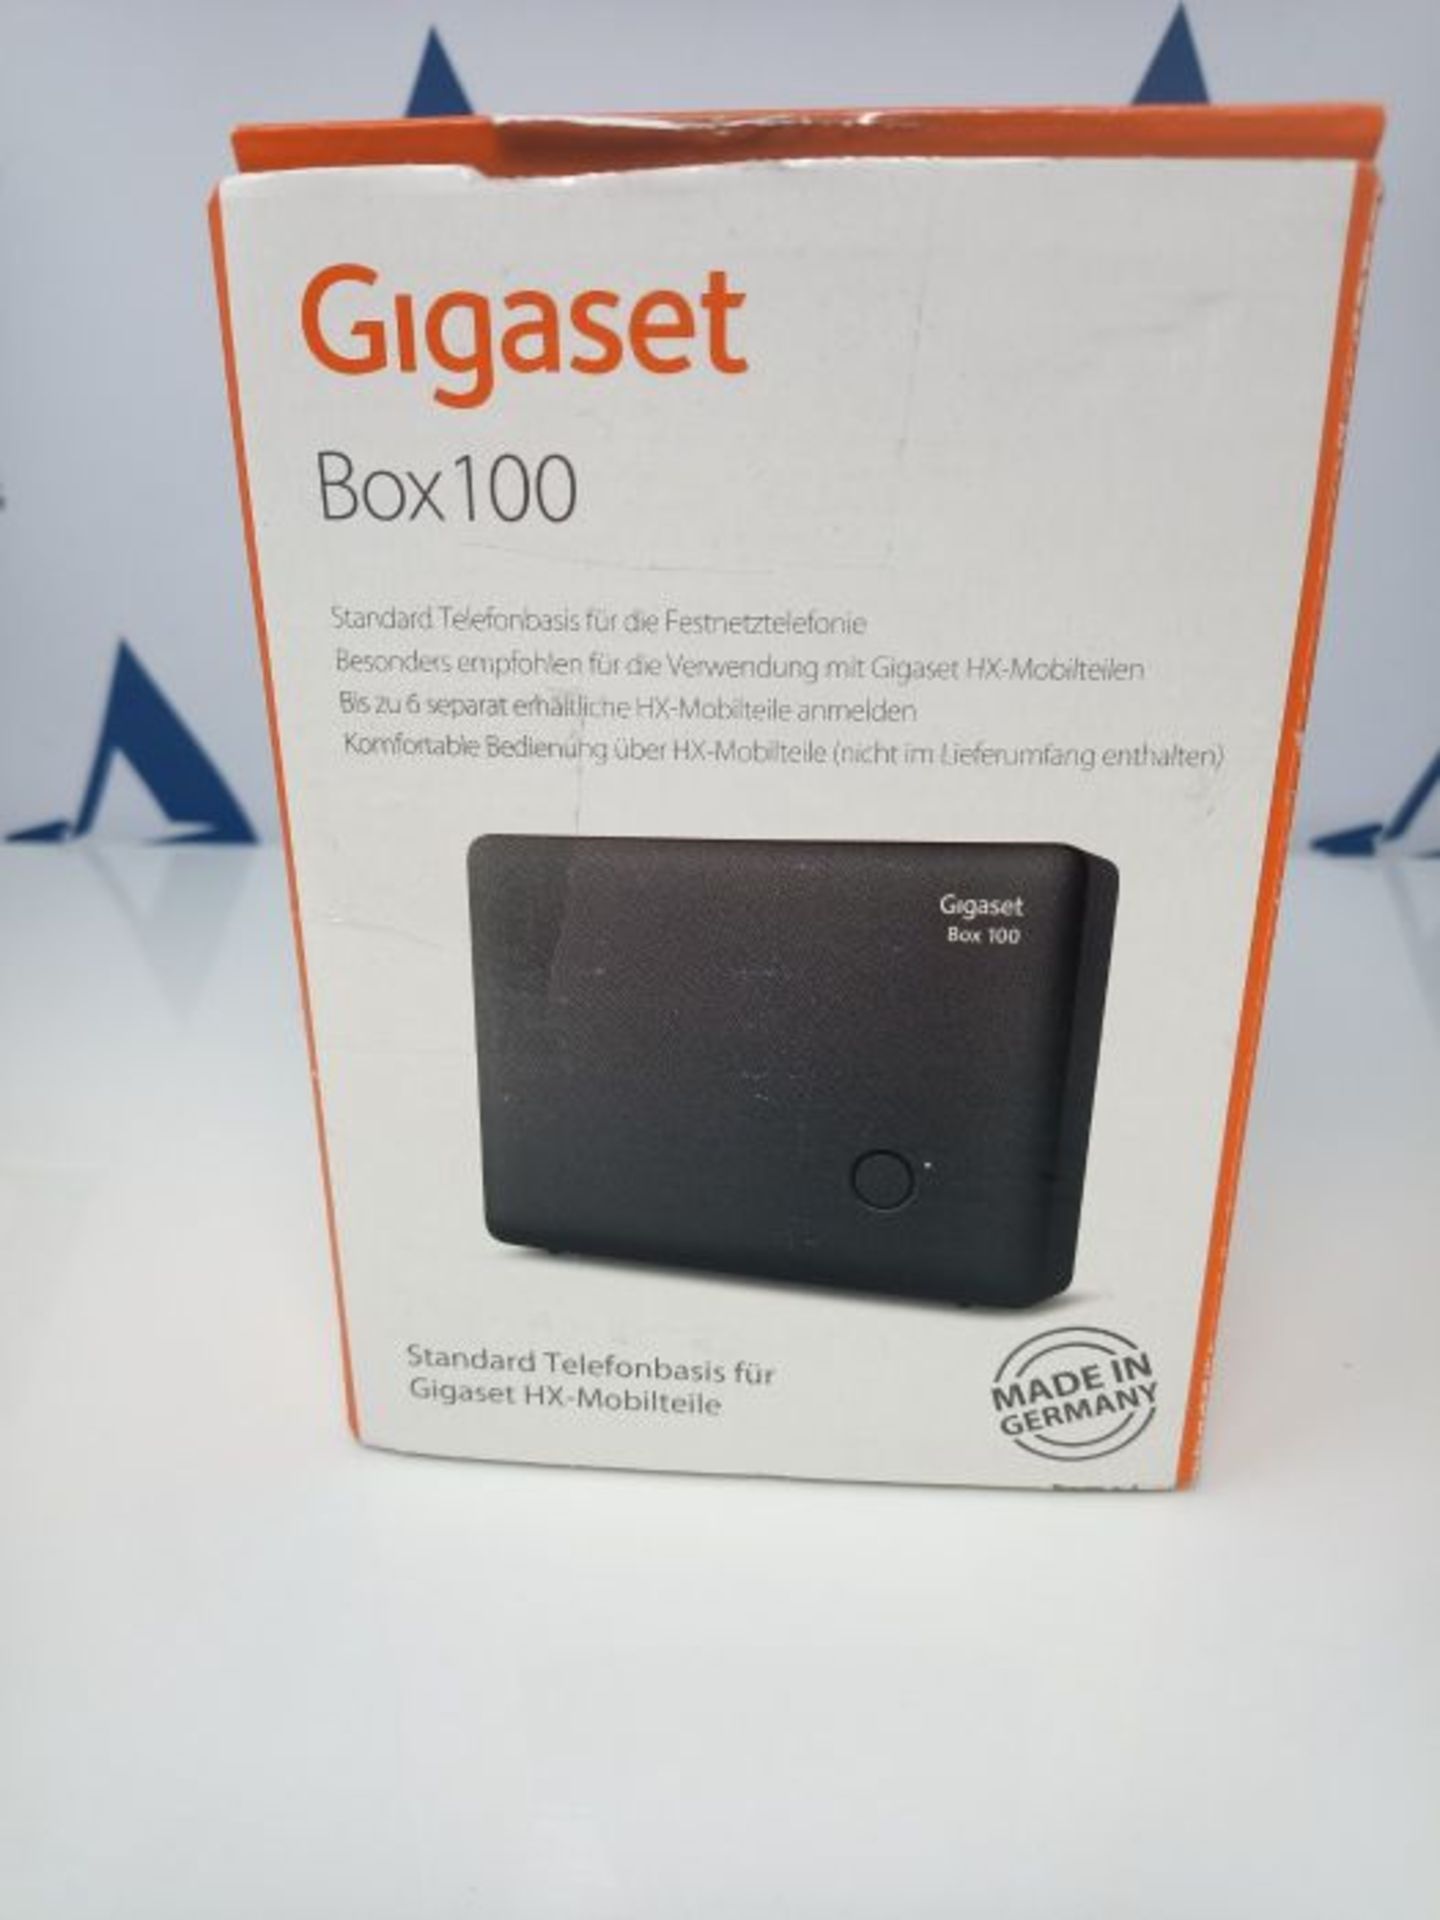 Gigaset DECT Basisstation Box 100 fÃ¼r Ihr eigenes Kommunikationssystem mit Gigaset - Image 2 of 3